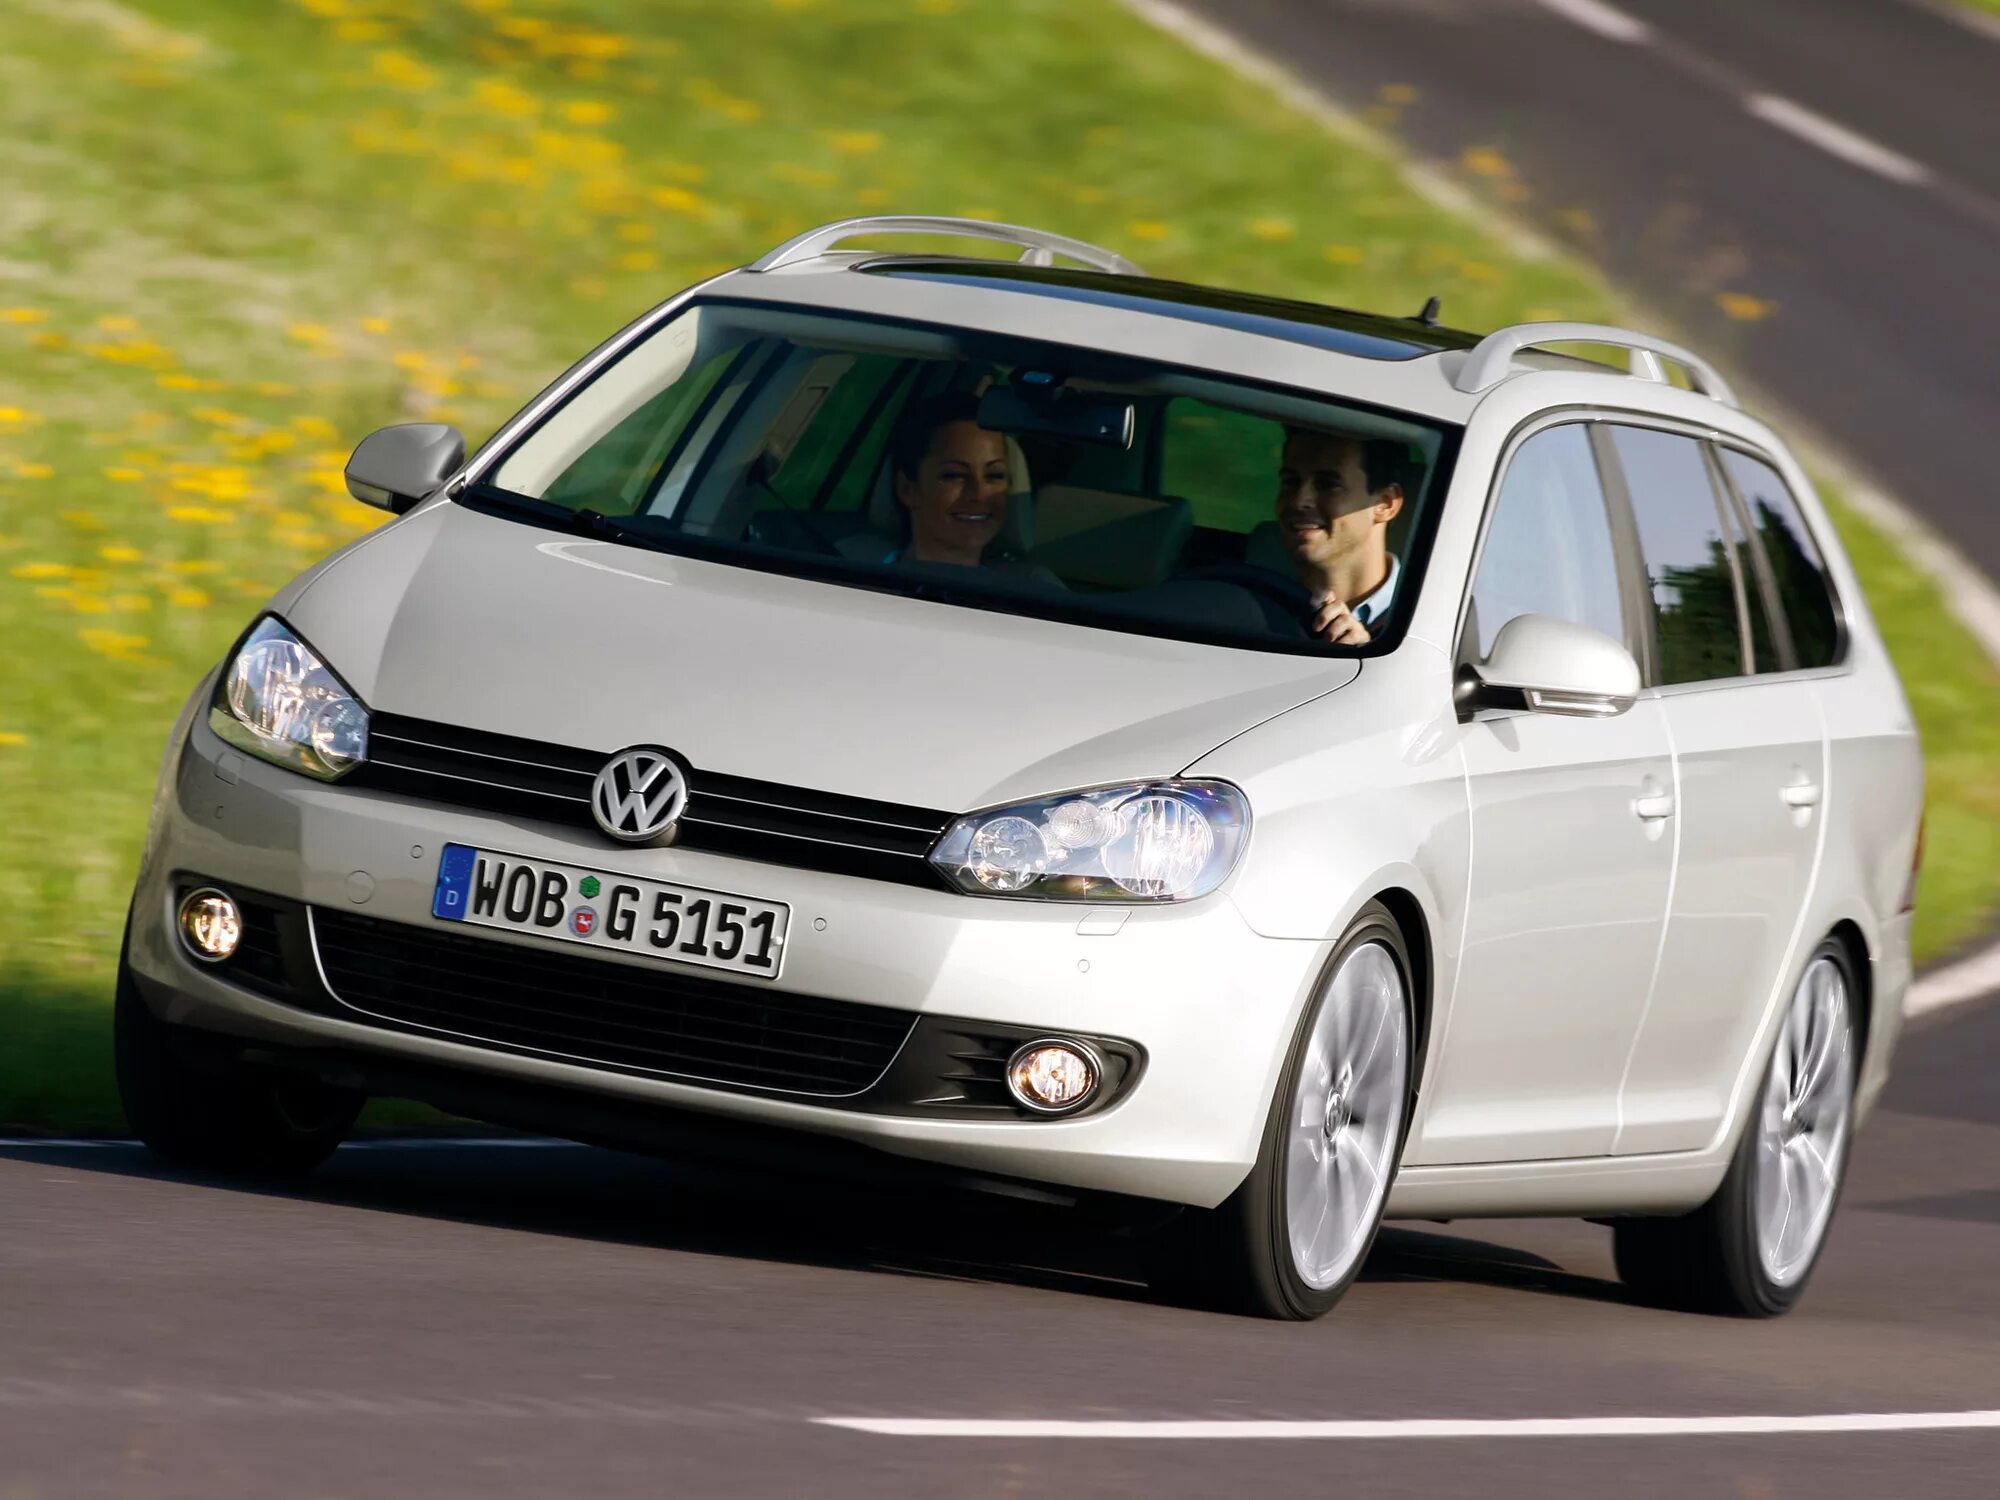 Гольф 6 универсал. Volkswagen Golf универсал 2008. Volkswagen Golf variant 2009. Volkswagen Golf 6 универсал. Volkswagen Golf 6 variant 2008.